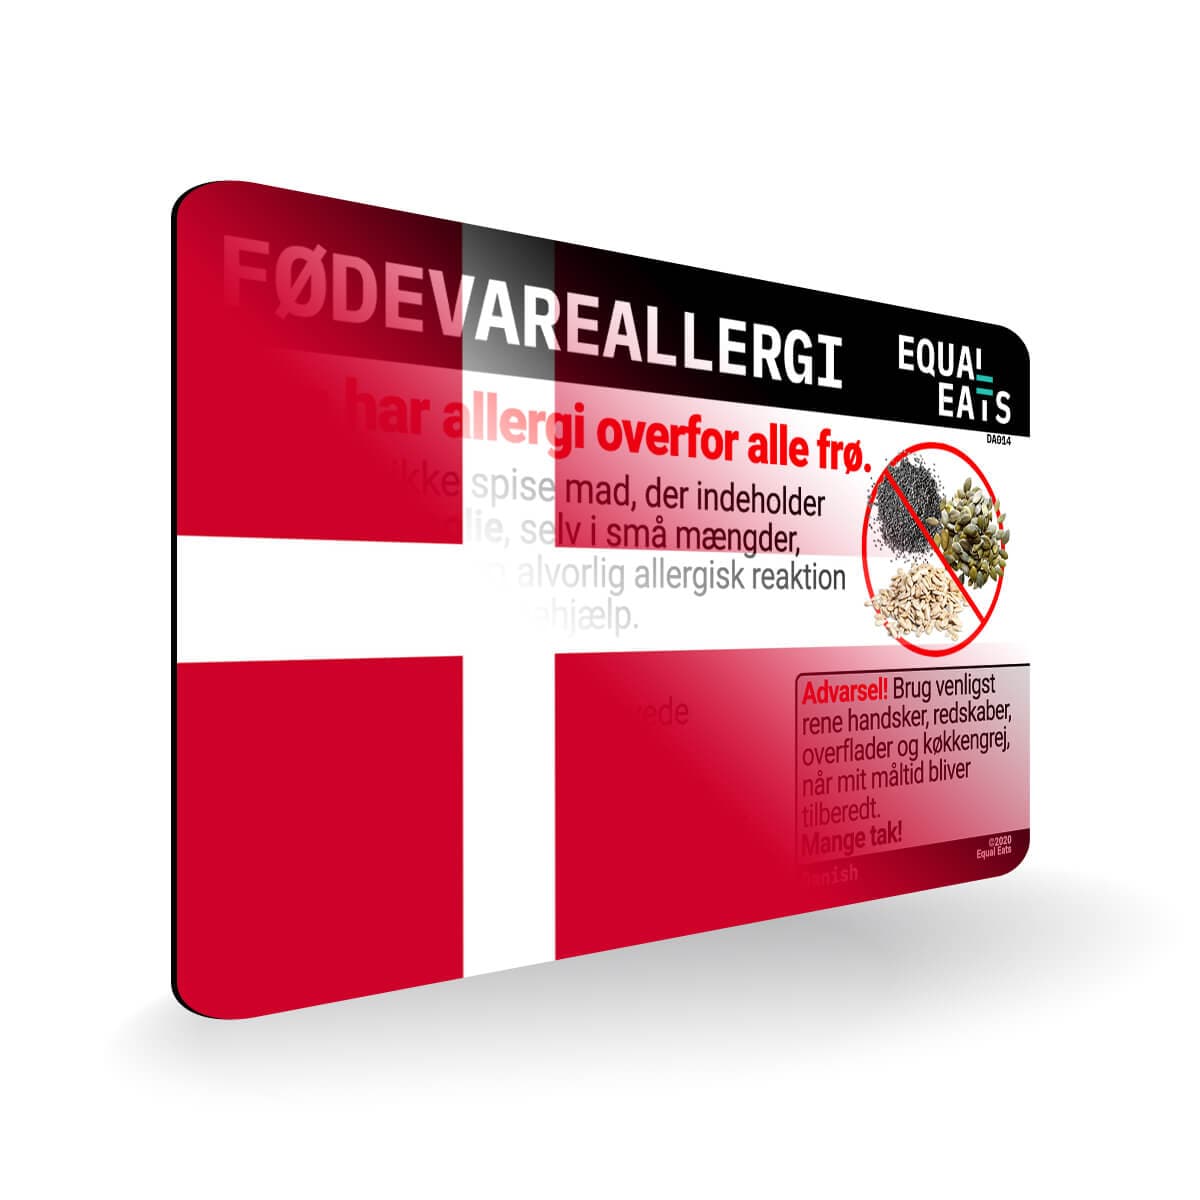 Seed Allergy in Danish. Seed Allergy Card for Denmark